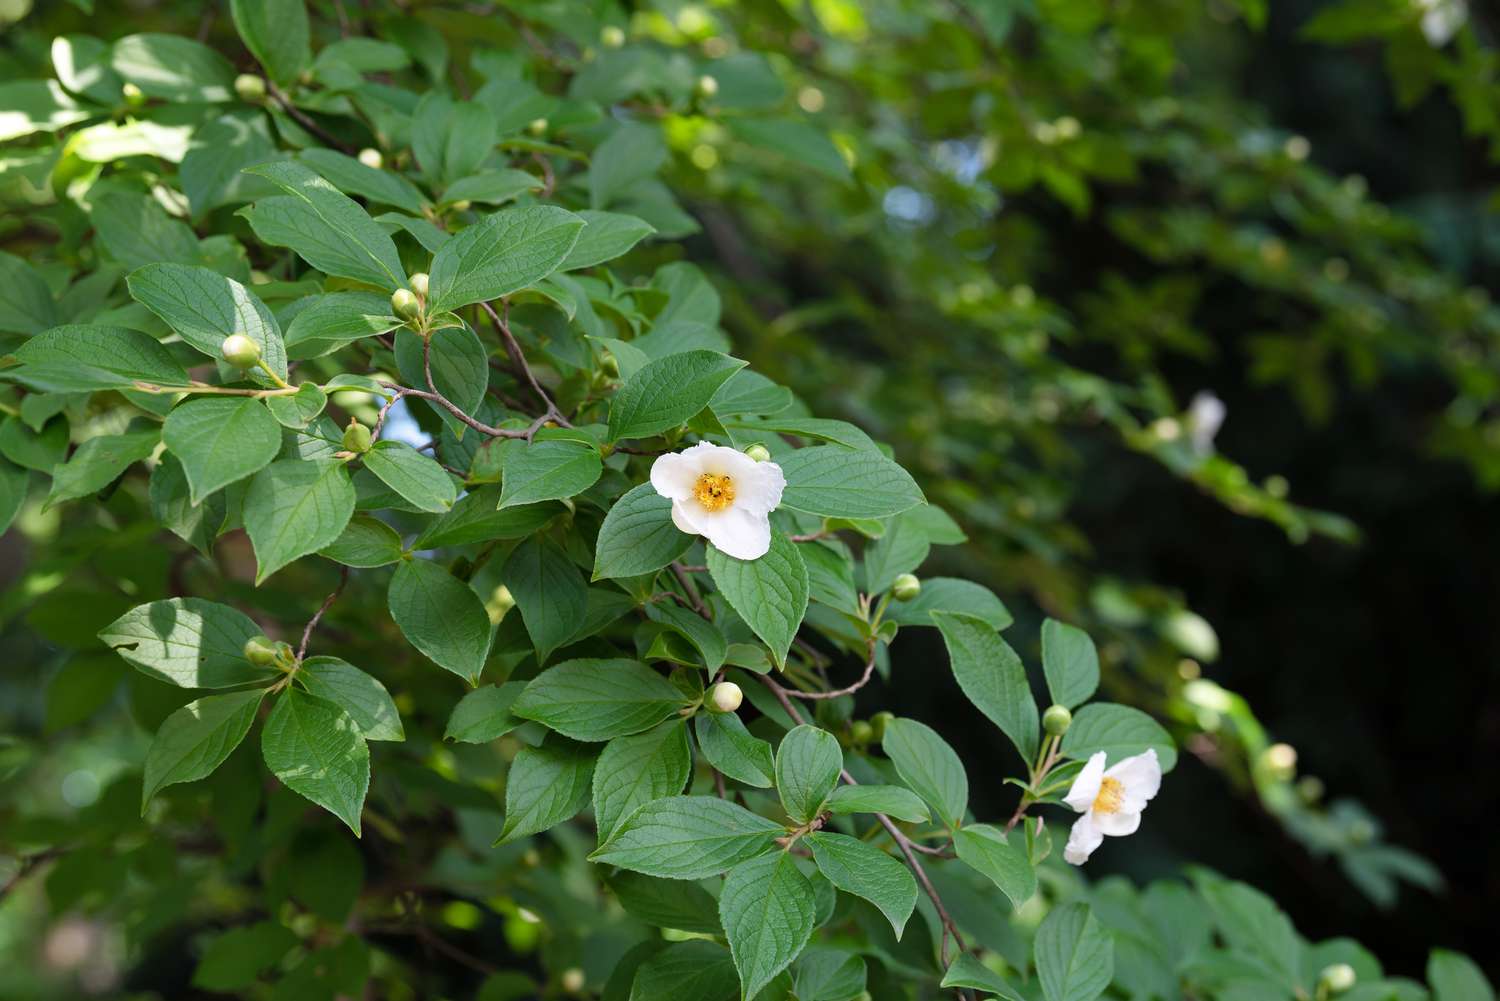 Galho da árvore stewartia japonesa com folhas com nervuras e flores brancas